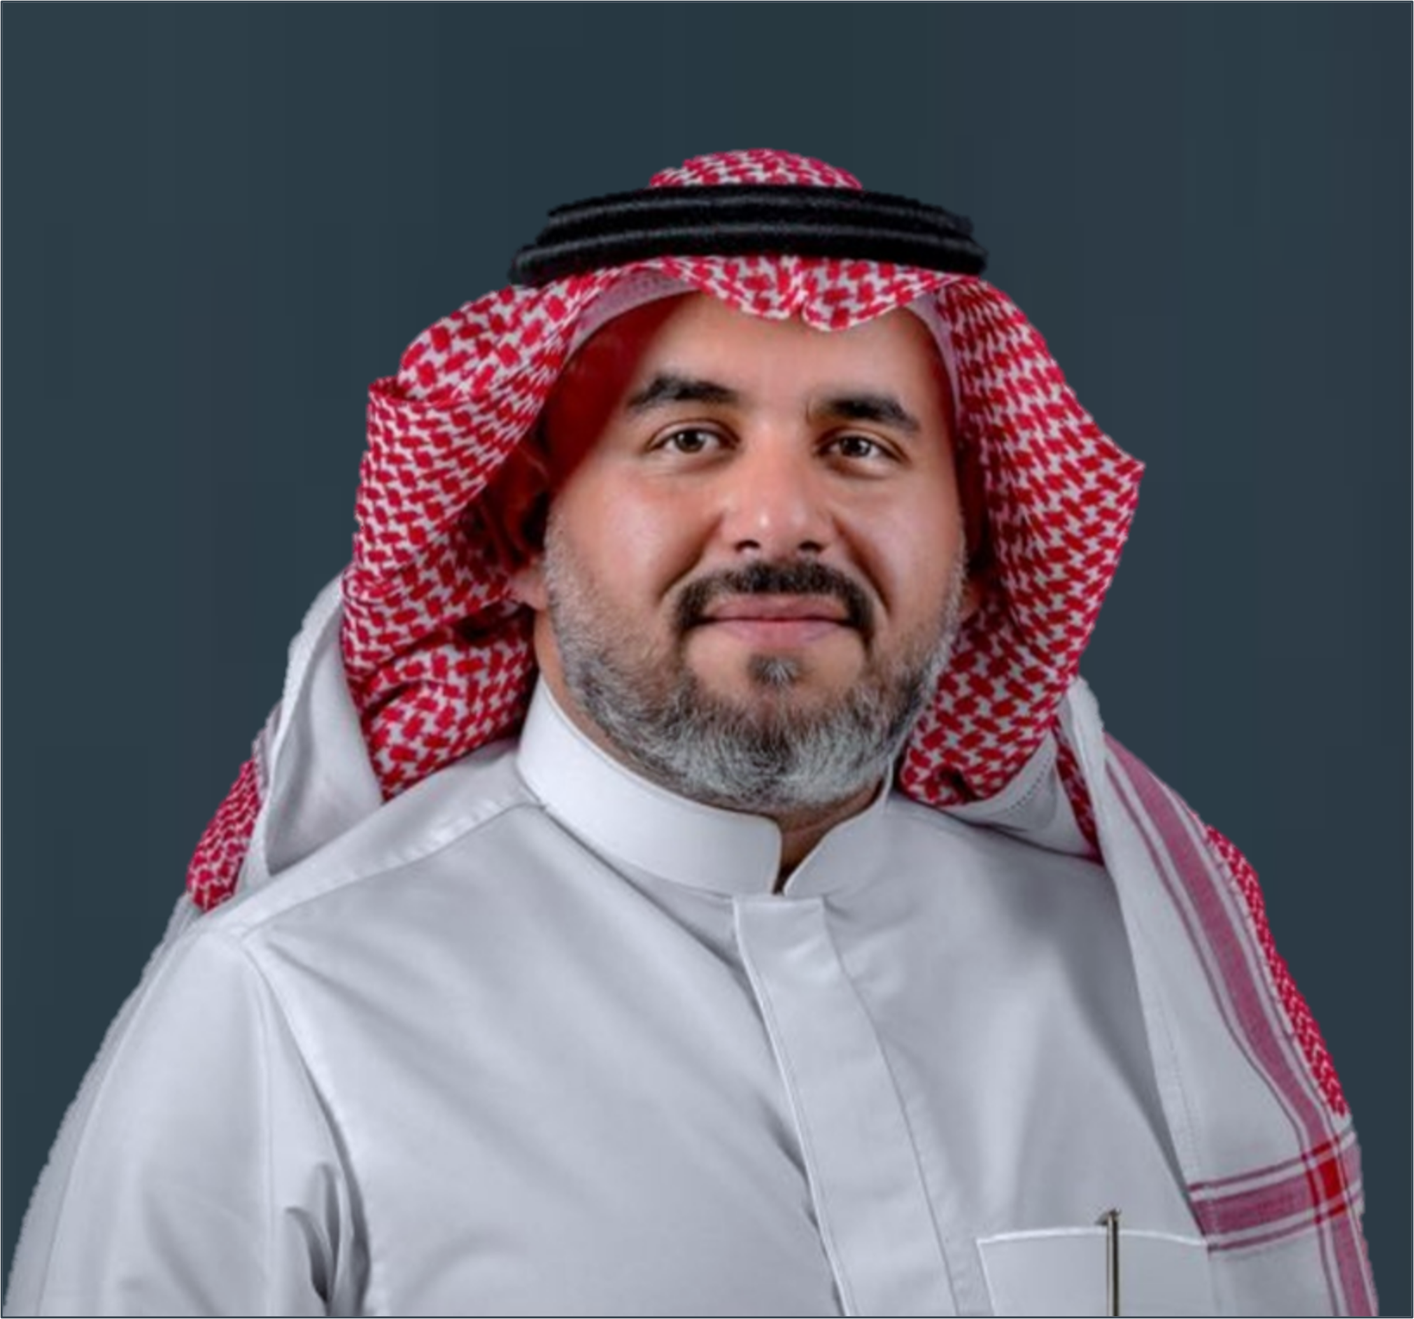 Saud AlOtaibi